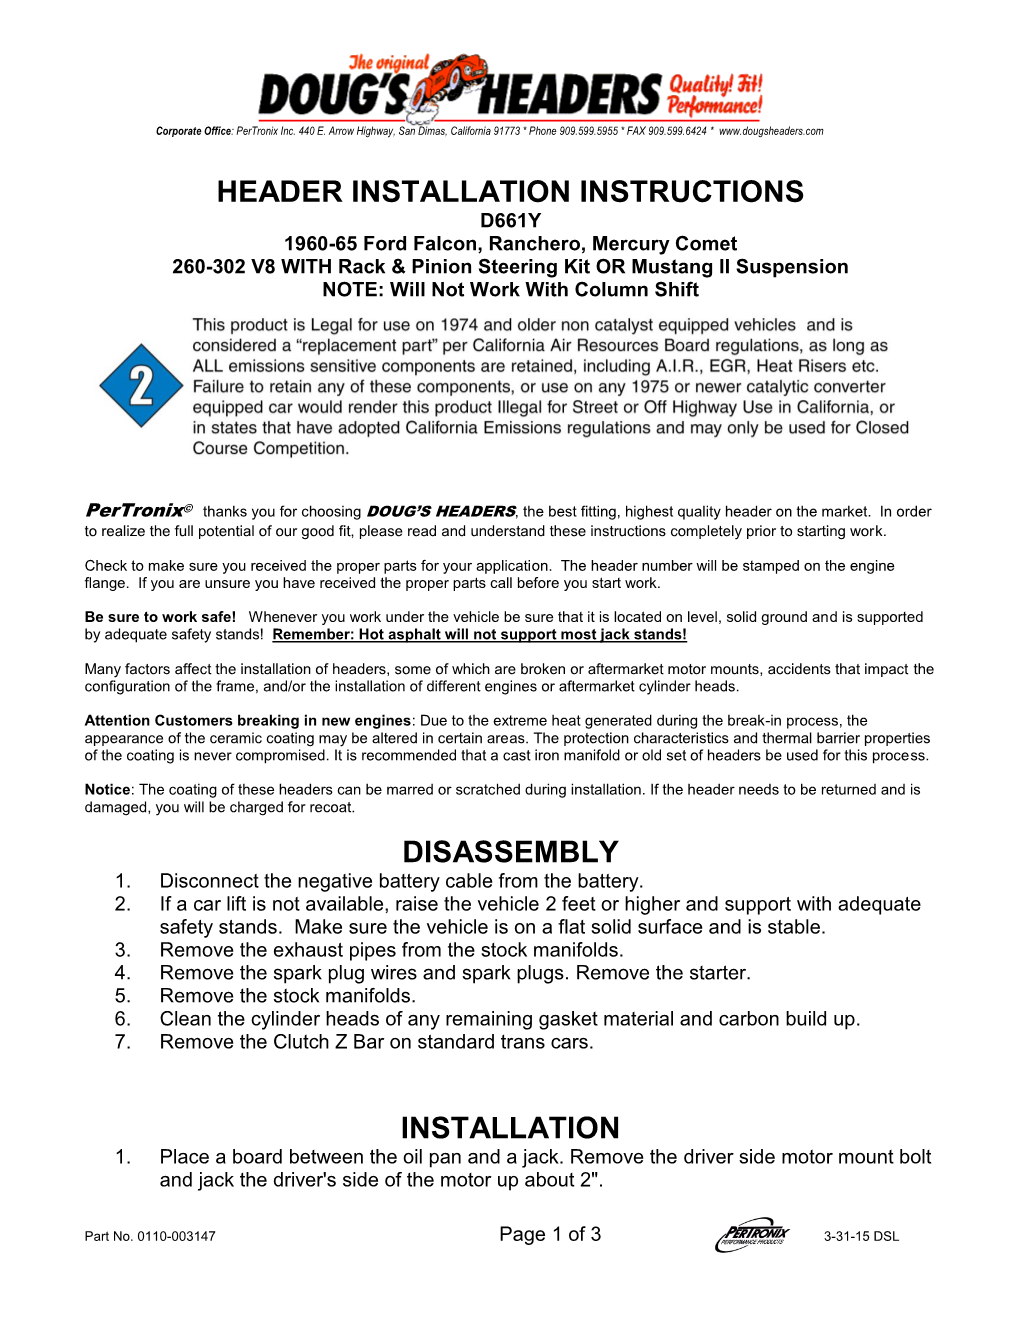 Header Installation Instructions